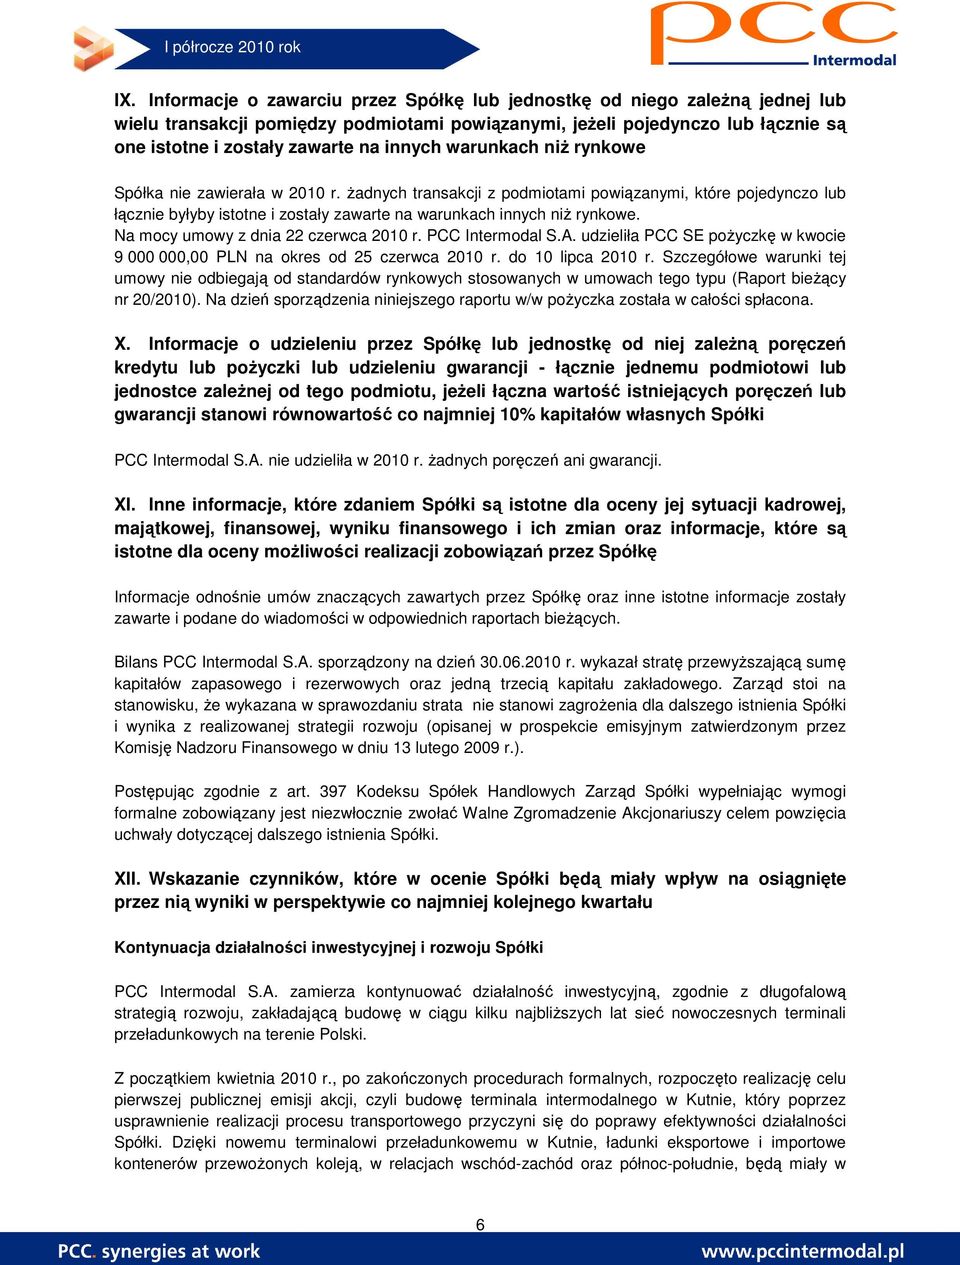 Na mocy umowy z dnia 22 czerwca 2010 r. PCC Intermodal S.A. udzieliła PCC SE poŝyczkę w kwocie 9 000 000,00 PLN na okres od 25 czerwca 2010 r. do 10 lipca 2010 r.